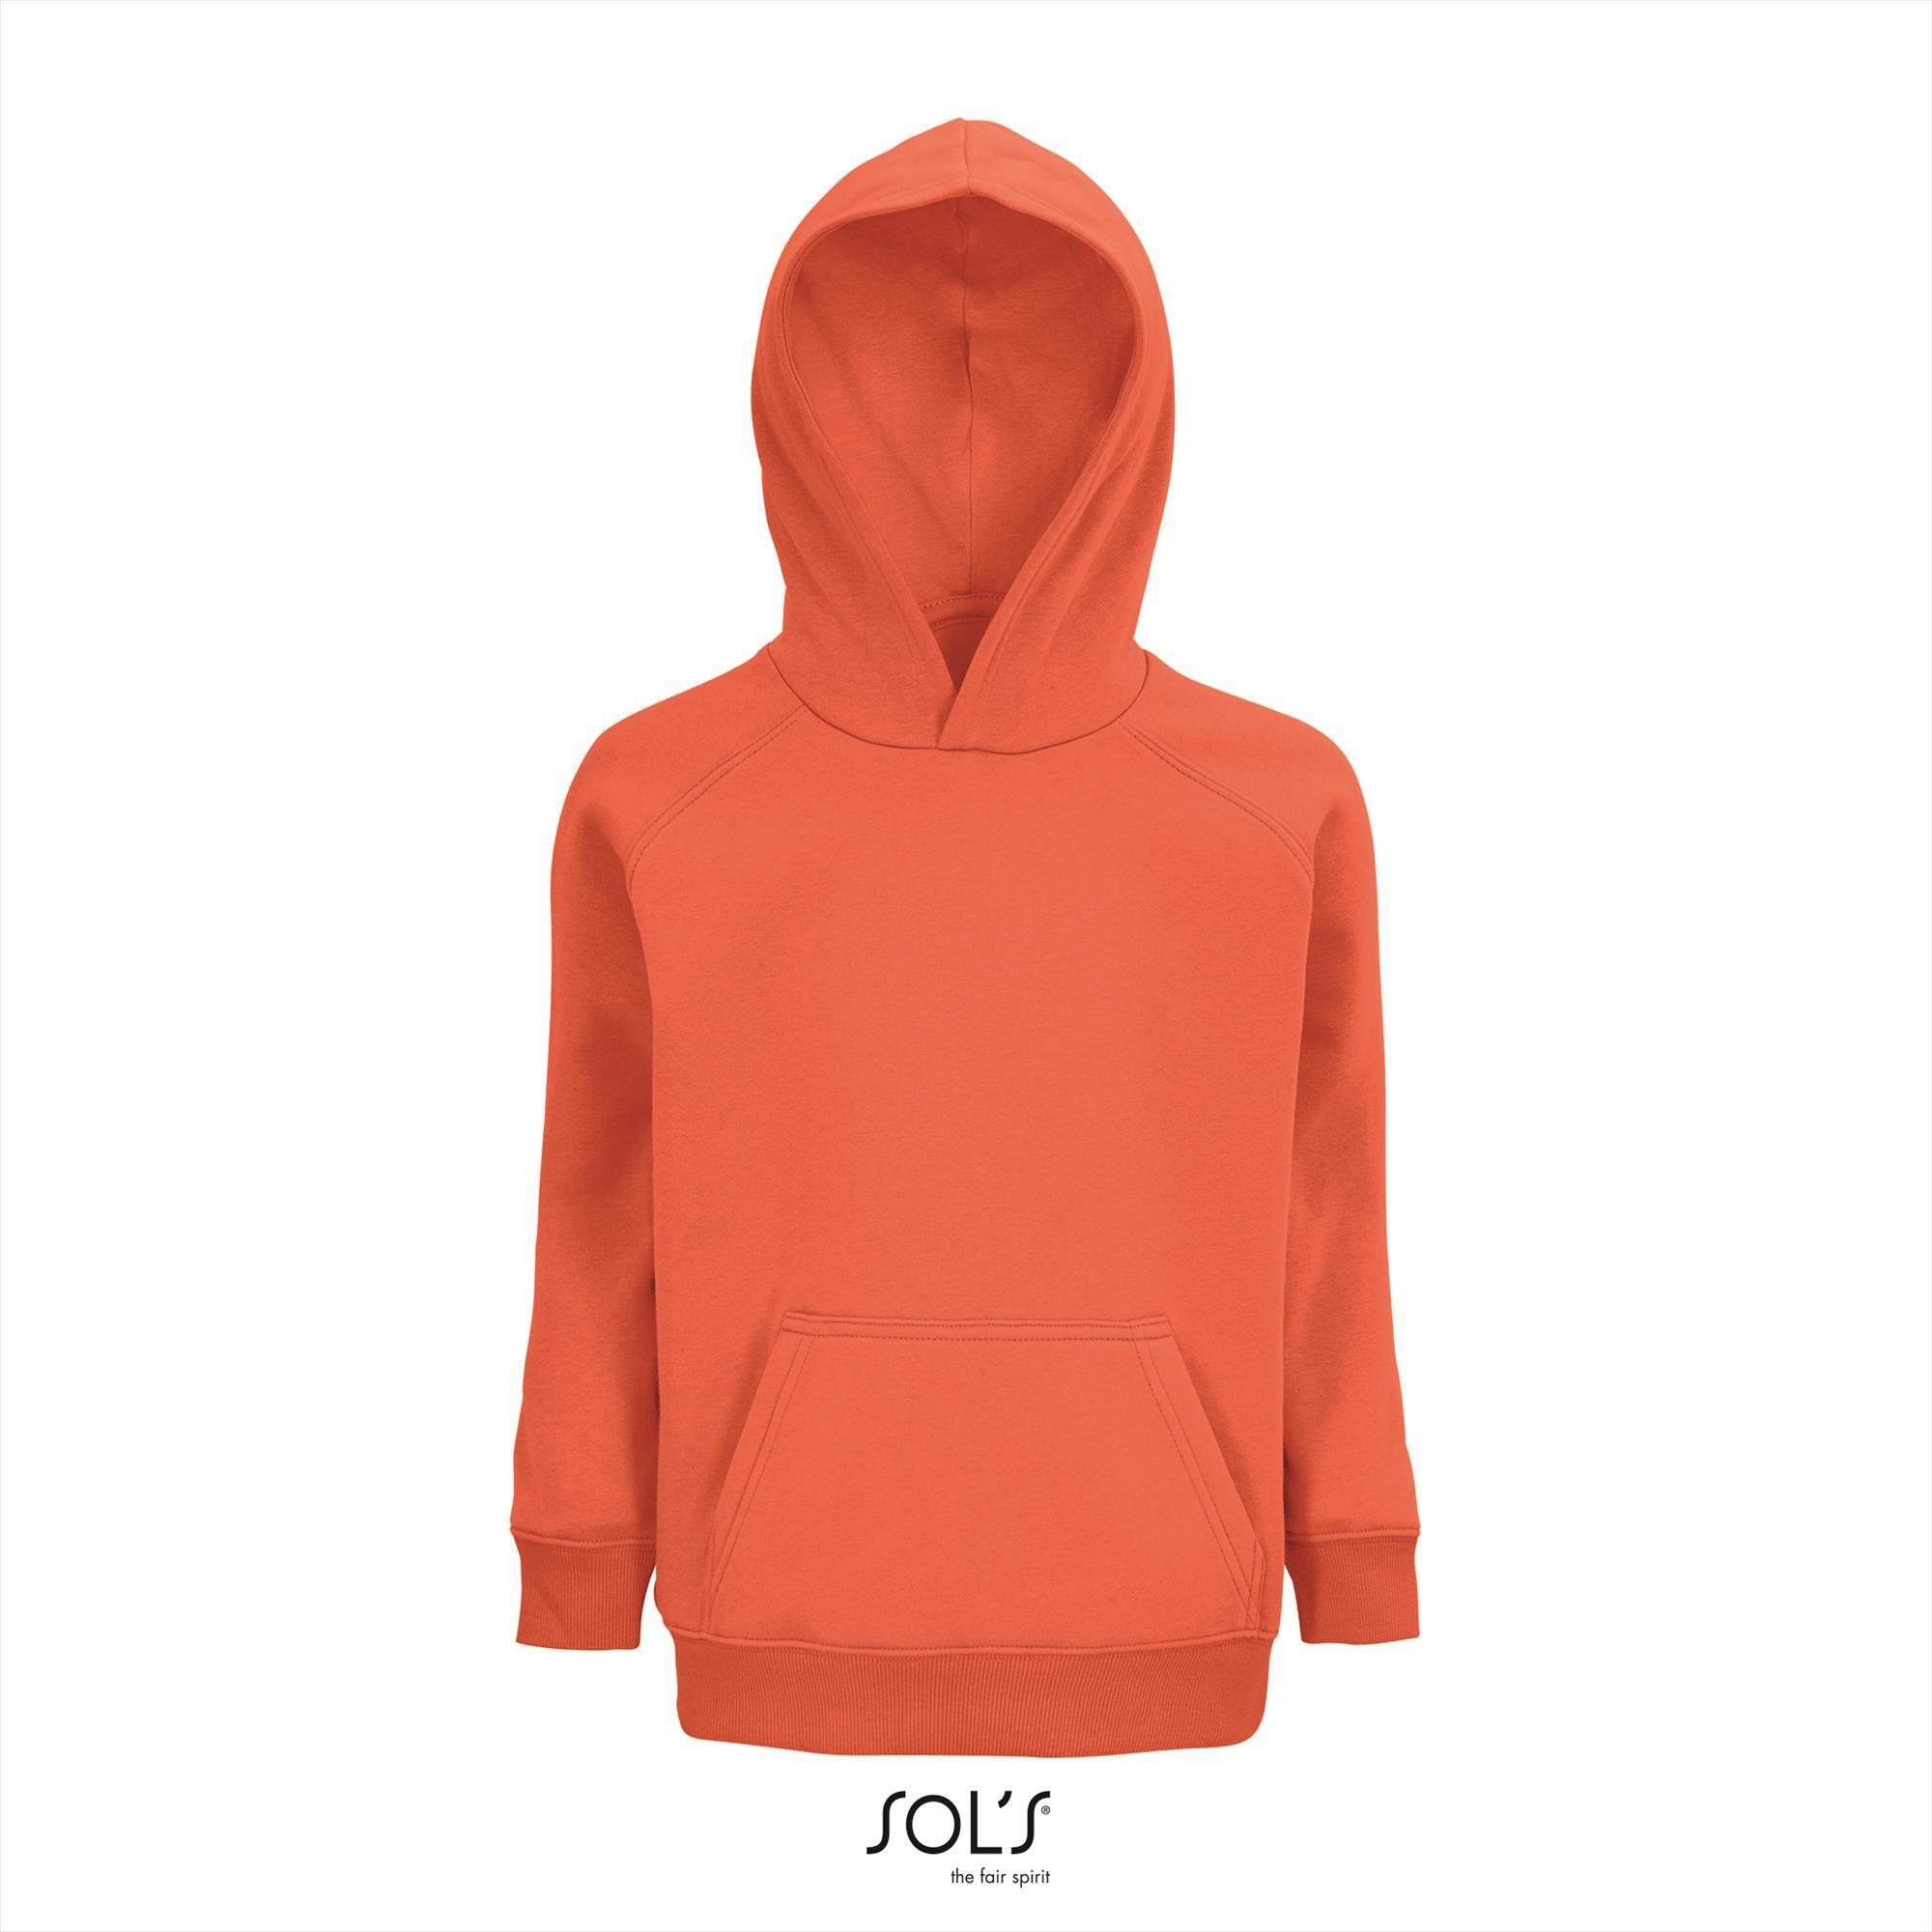 Kinder hoodie oranje personaliseren bedrukken sweatshirt